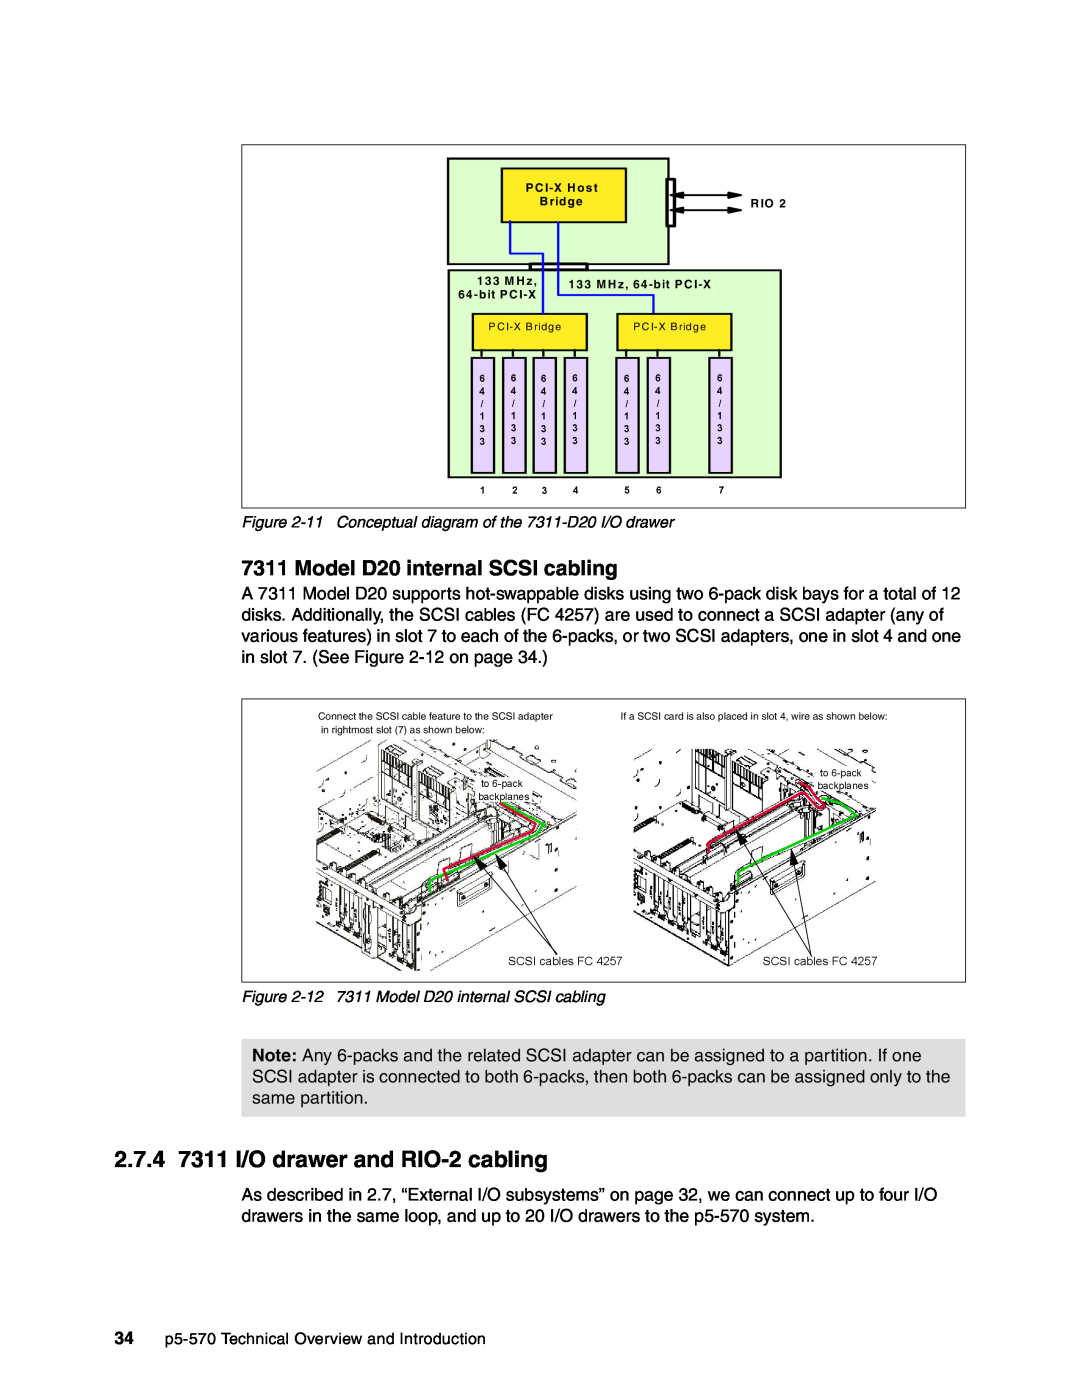 IBM P5 570 manual 2.7.4 7311 I/O drawer and RIO-2cabling, Model D20 internal SCSI cabling 